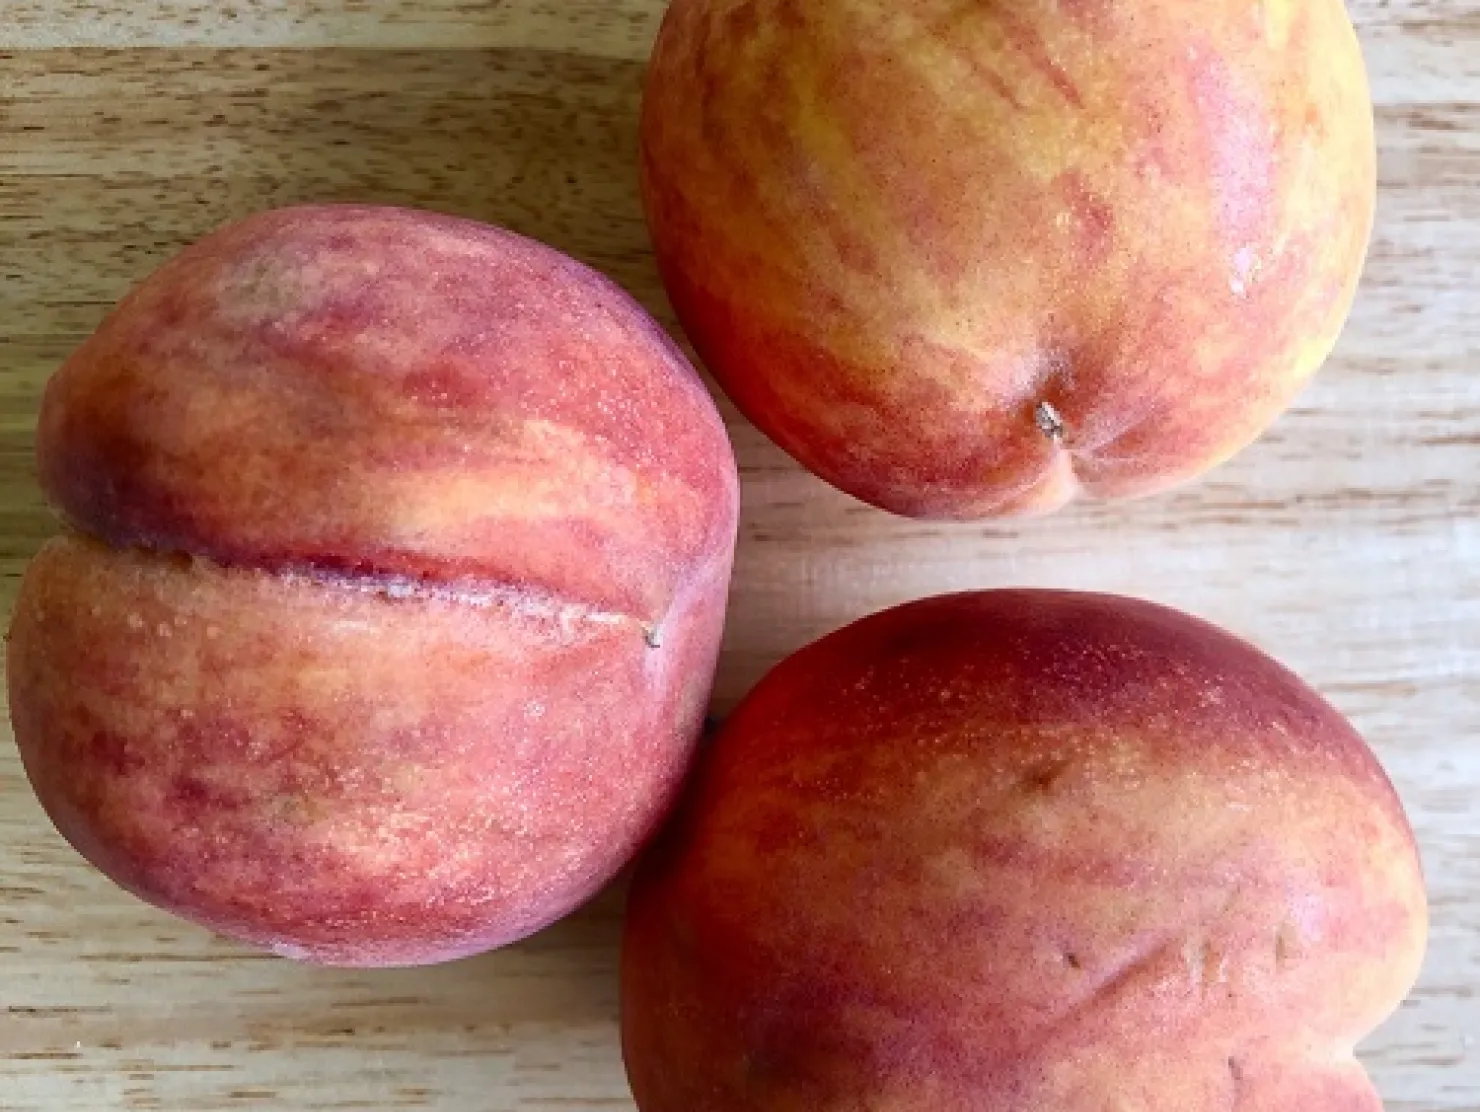 Peaches  SNAP-Ed